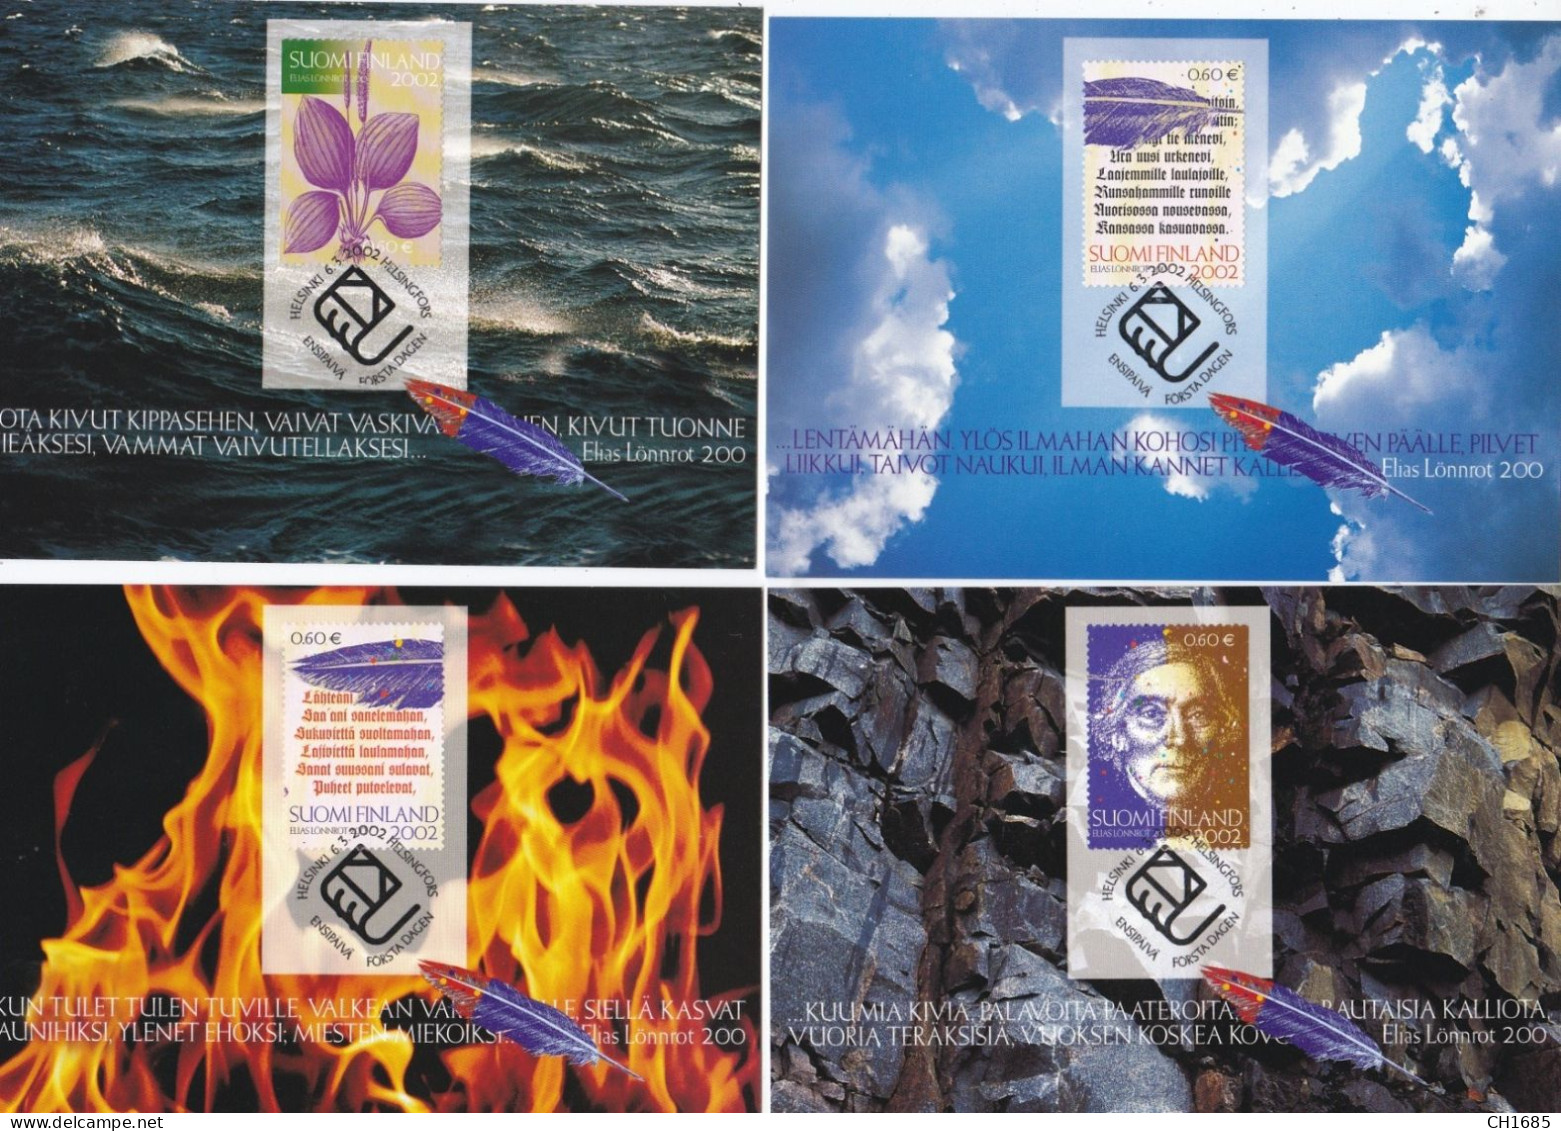 FINLANDE  : Cartes-maximum : Série De 4 Cartes Elias Lönnrot Oblitération 06 03  2002 - Cartes-maximum (CM)